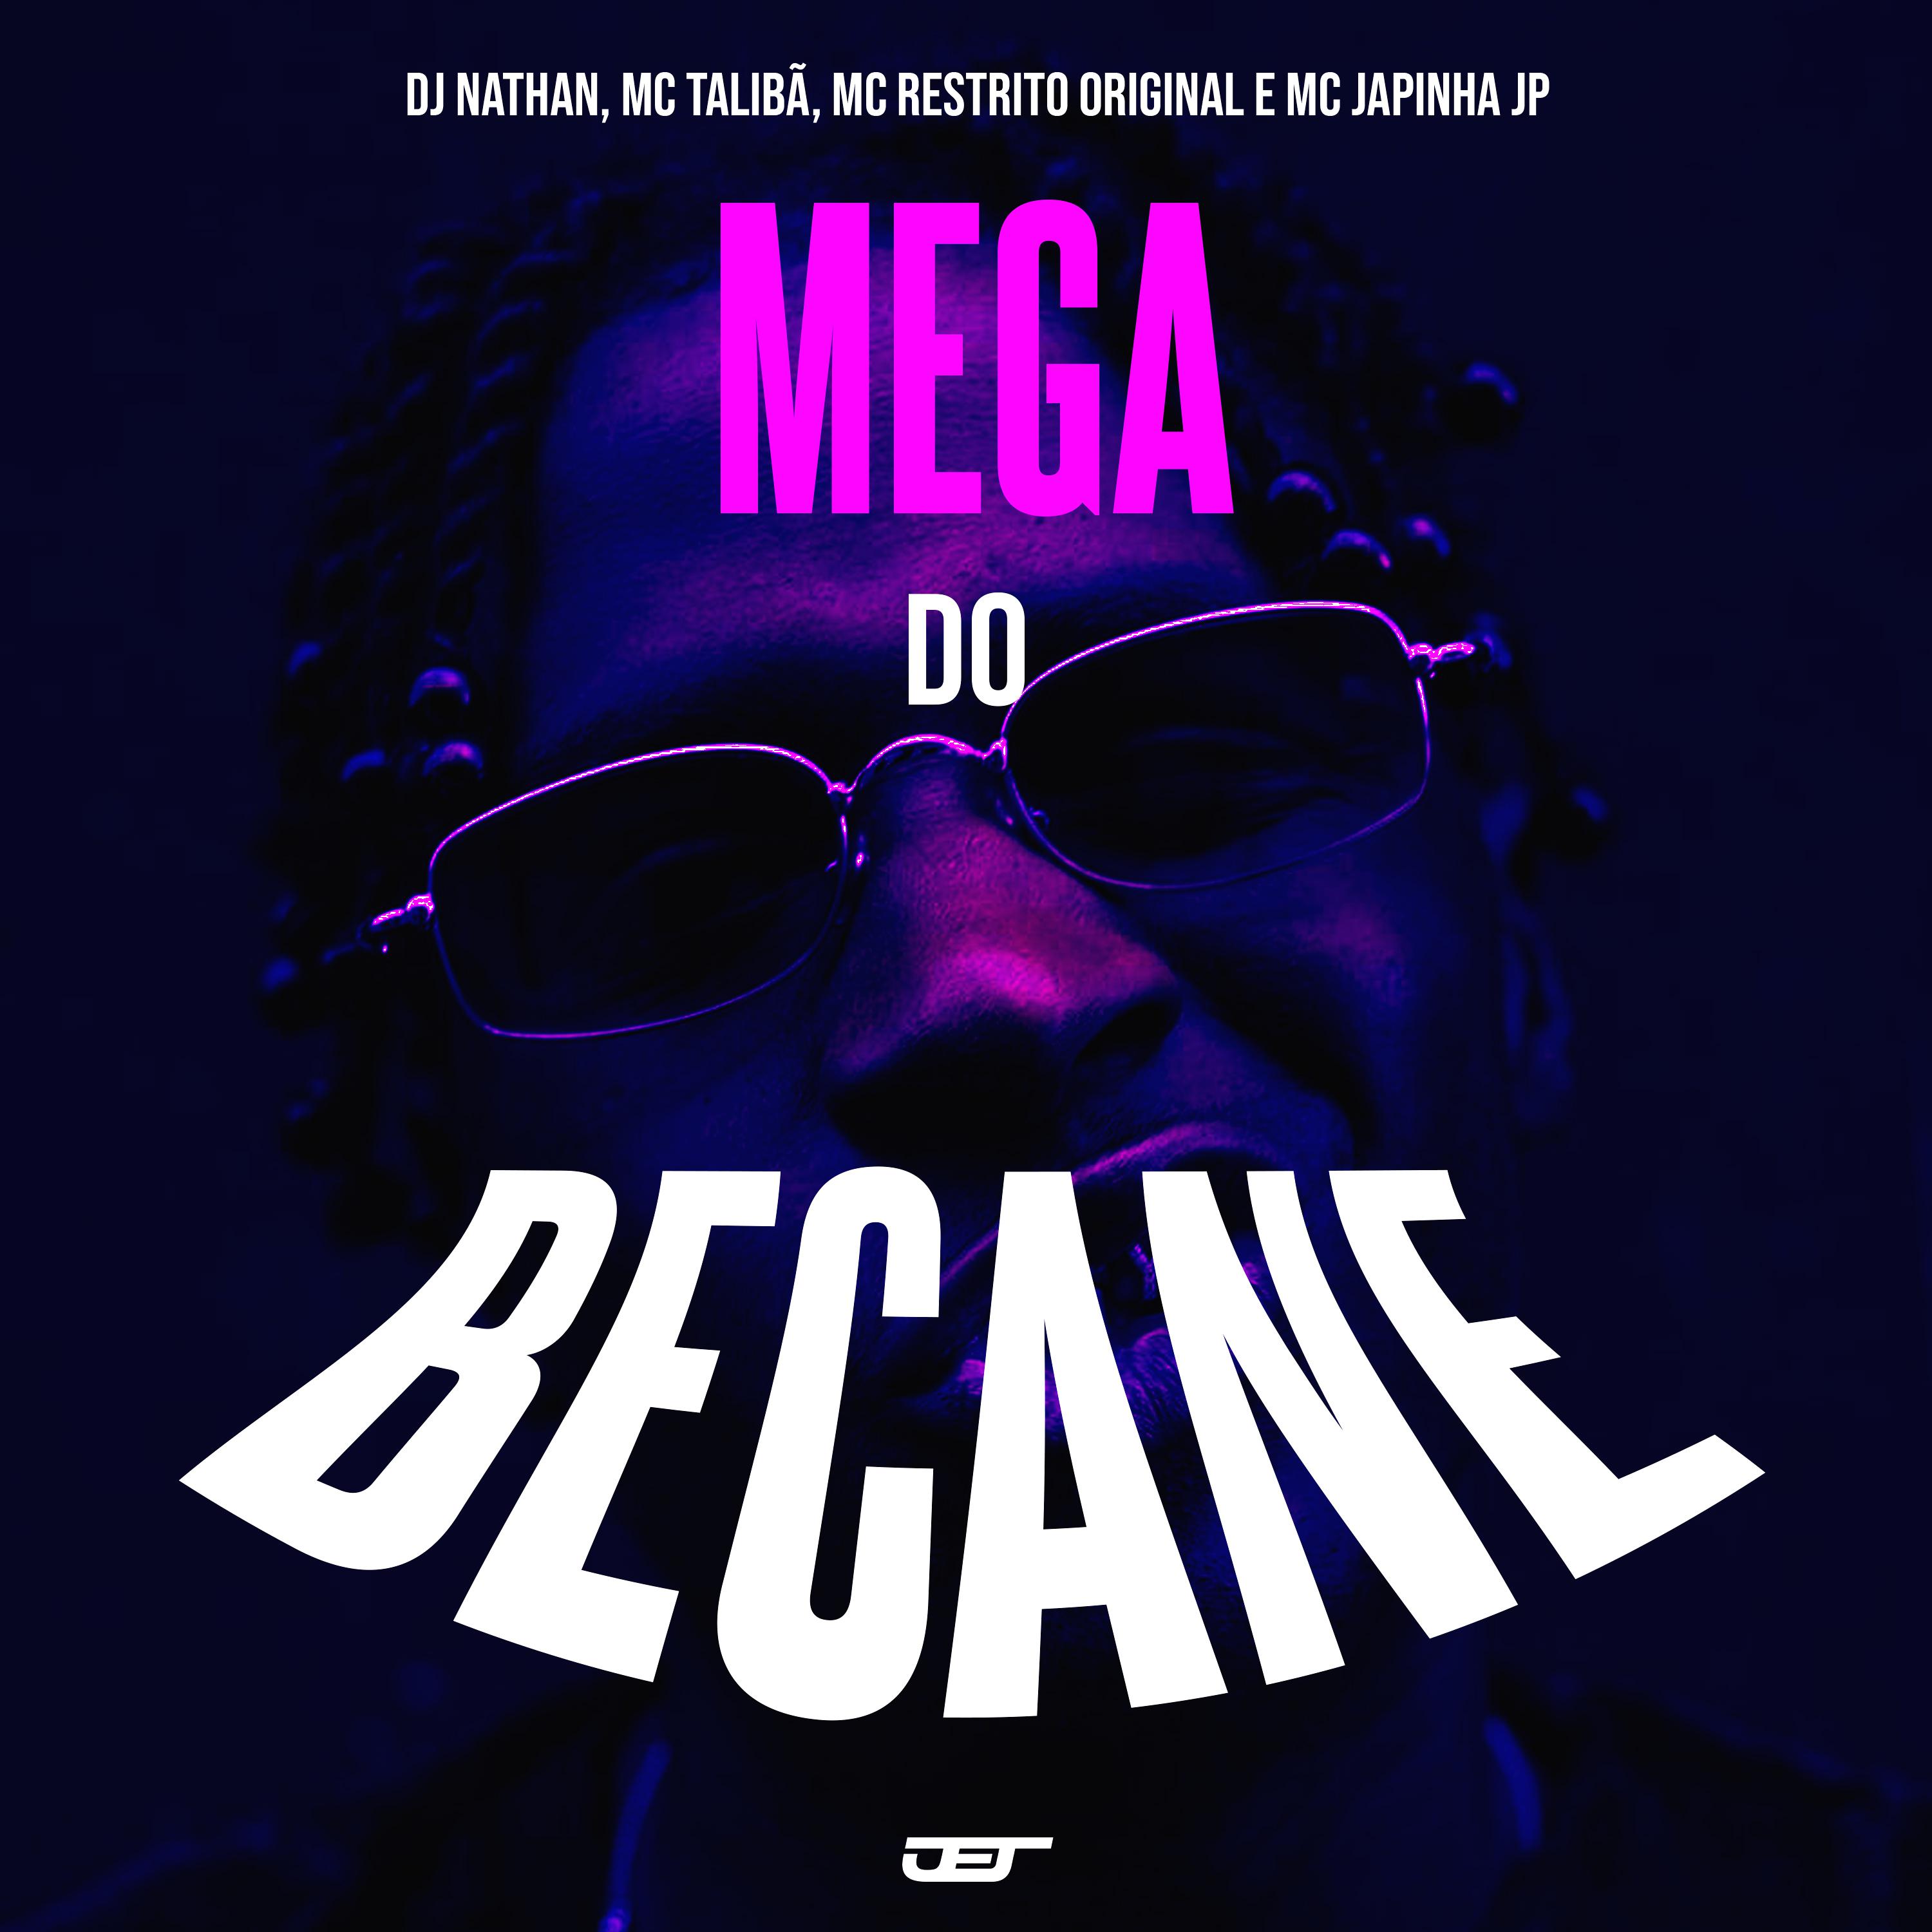 Постер альбома Mtg Mega do Becane